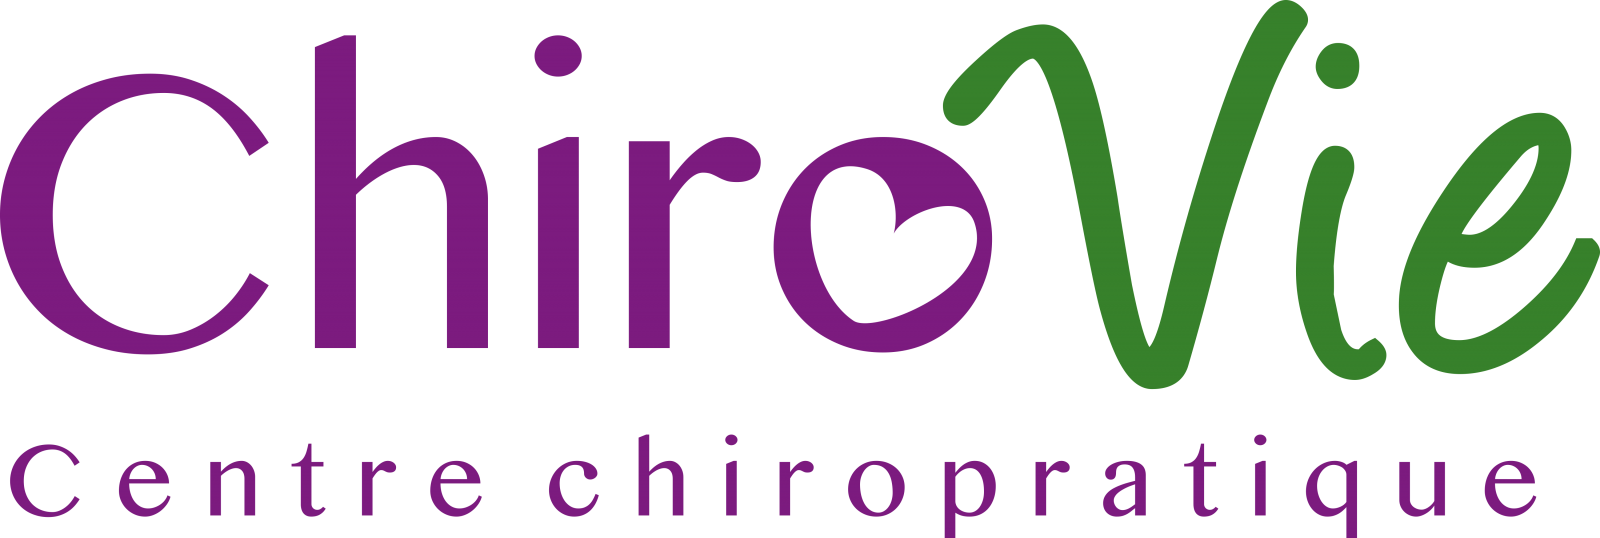 chirovie-logo